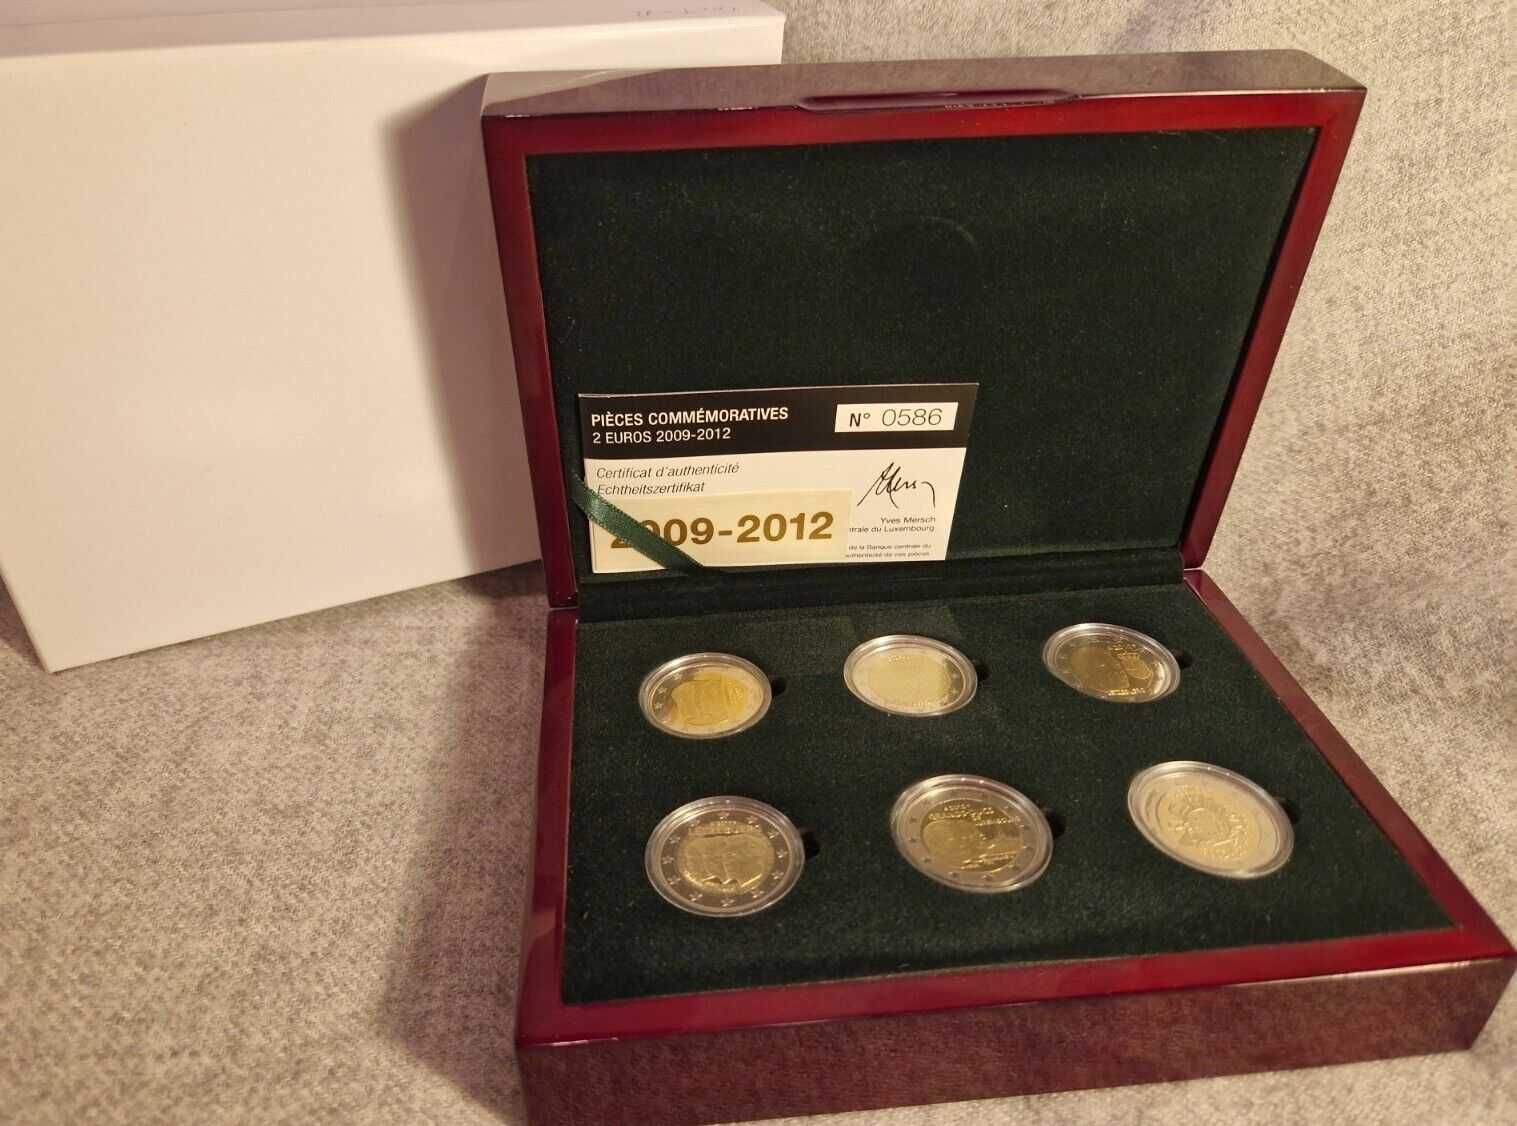 Caixa de moedas comemorativas proof do Luxemburgo dos anos 2009 a 2012